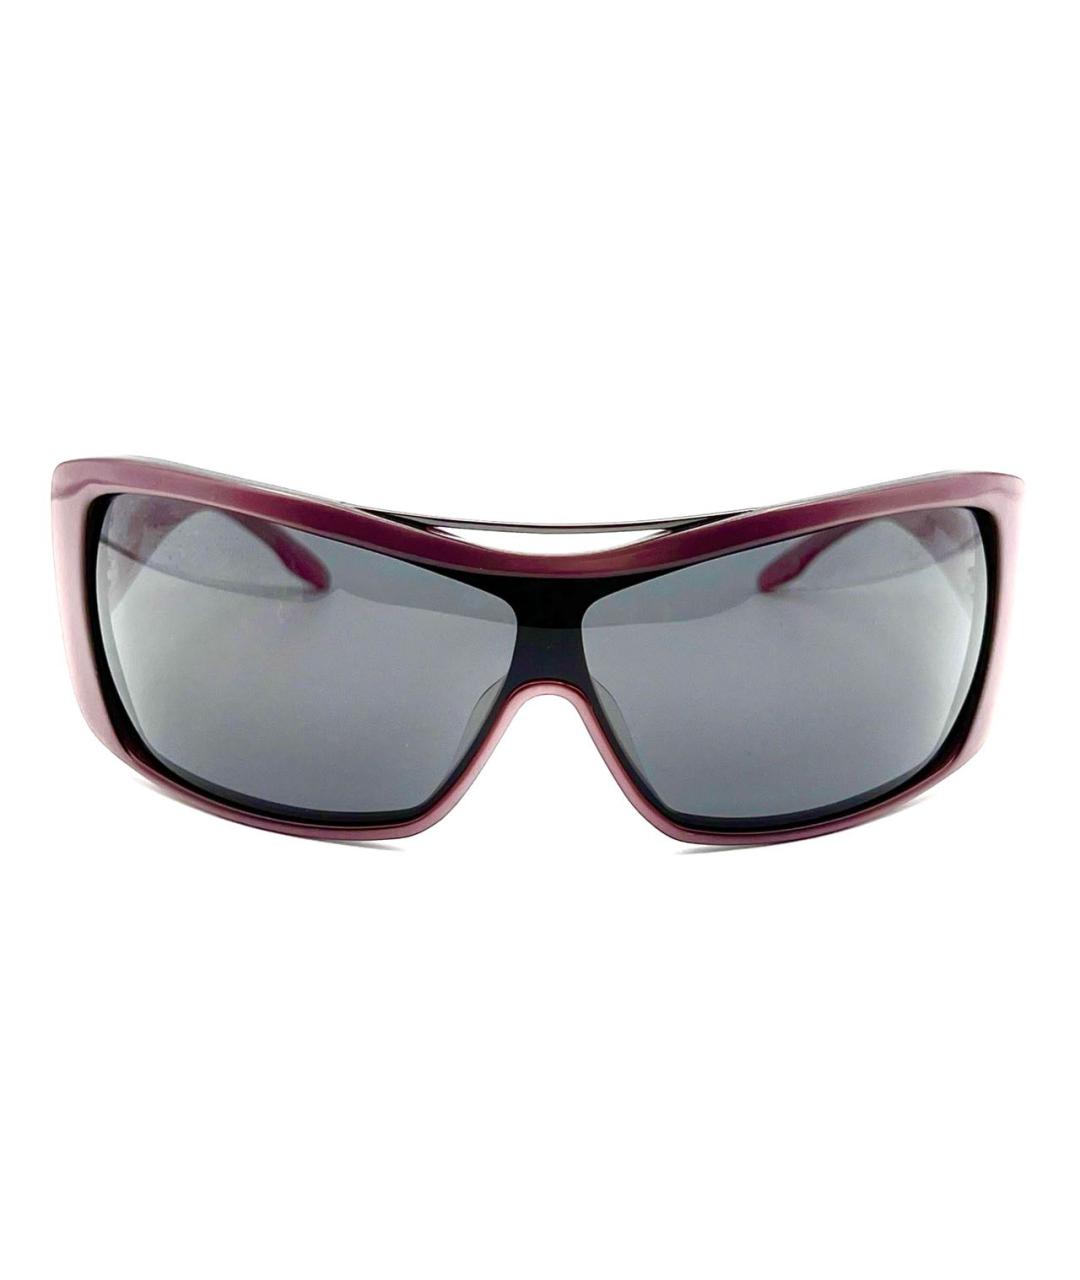 CERRUTI 1881 Розовые пластиковые солнцезащитные очки, фото 1